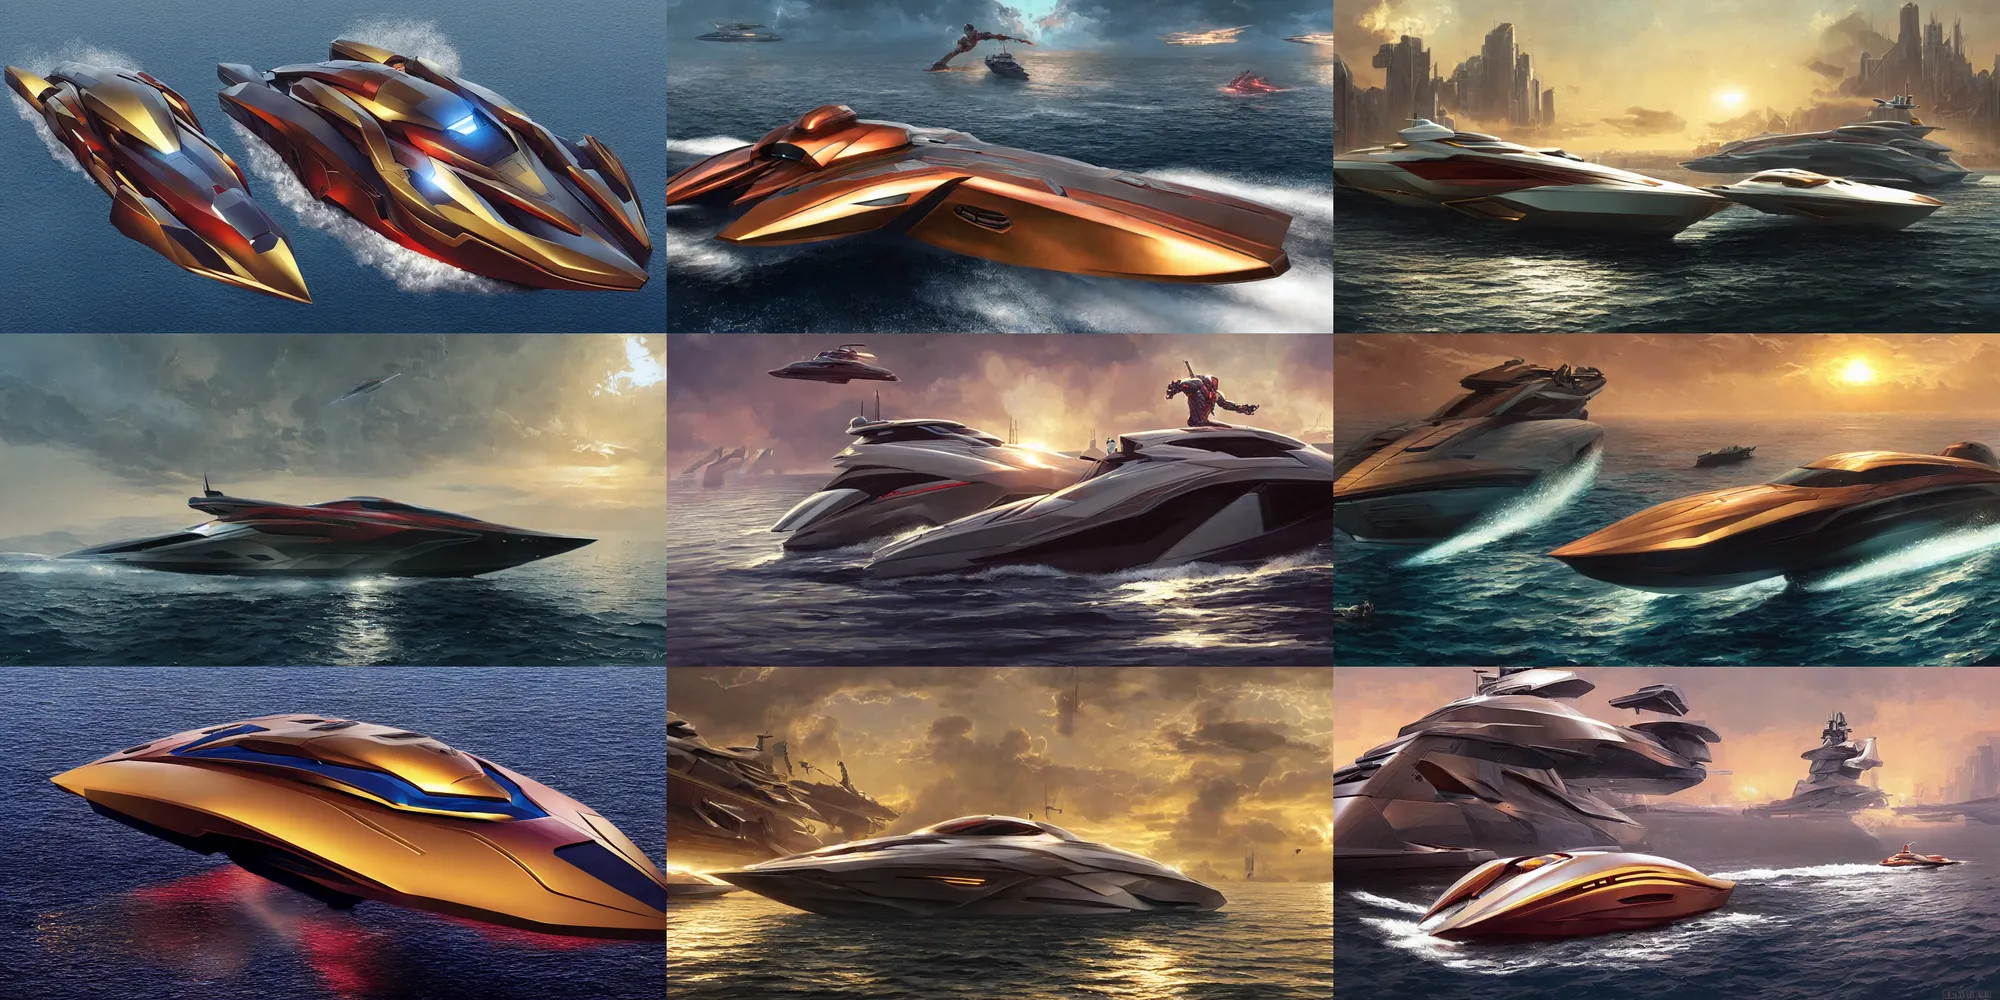 futuristic speedboat